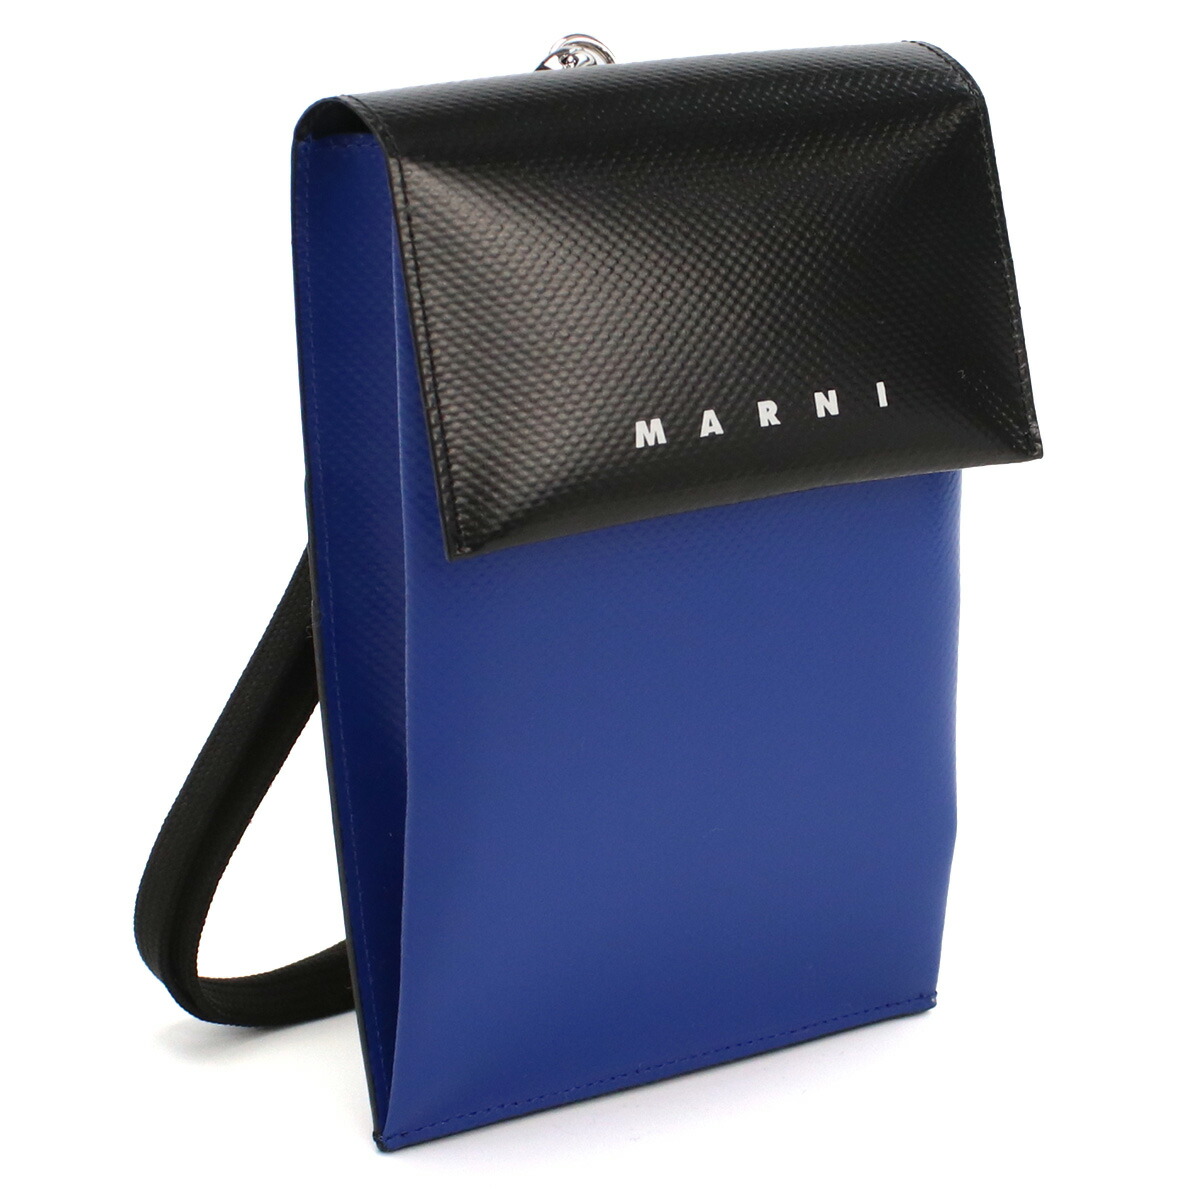 マルニ MARNI  フォンケース ブランド スマホバッグ ネックポーチ TEMI0004A4 P3572 Z2O28 ブルー系 ブラック bag-01 gsw-3 gsm-3